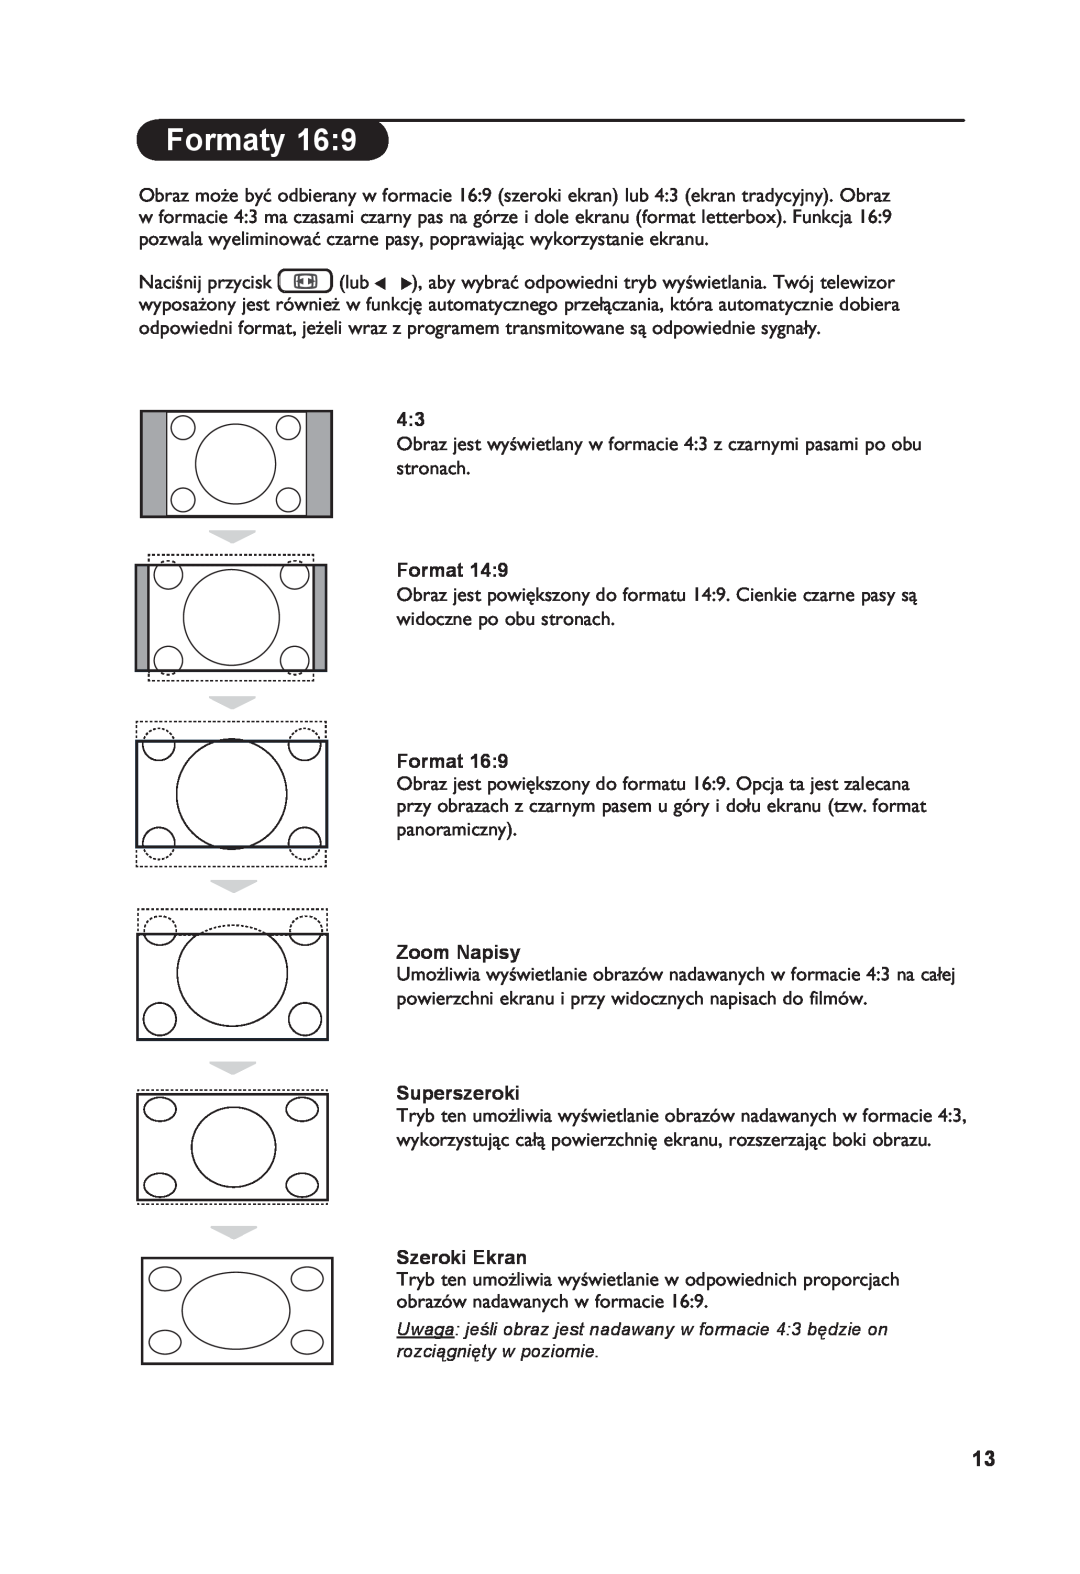 Philips 26PF7321 manual Formaty, Zoom Napisy, Superszeroki, Szeroki Ekran 